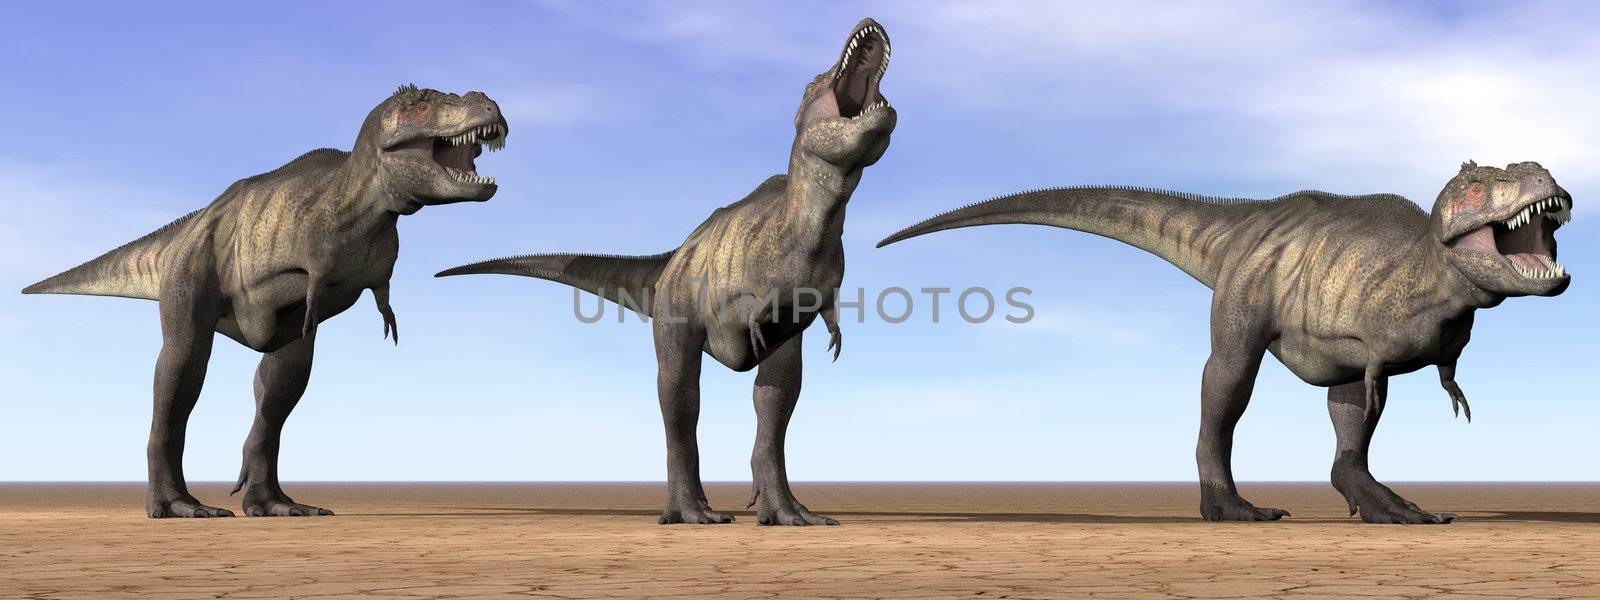 Three tyrannosaurus dinosaurs standing in the desert by daylight